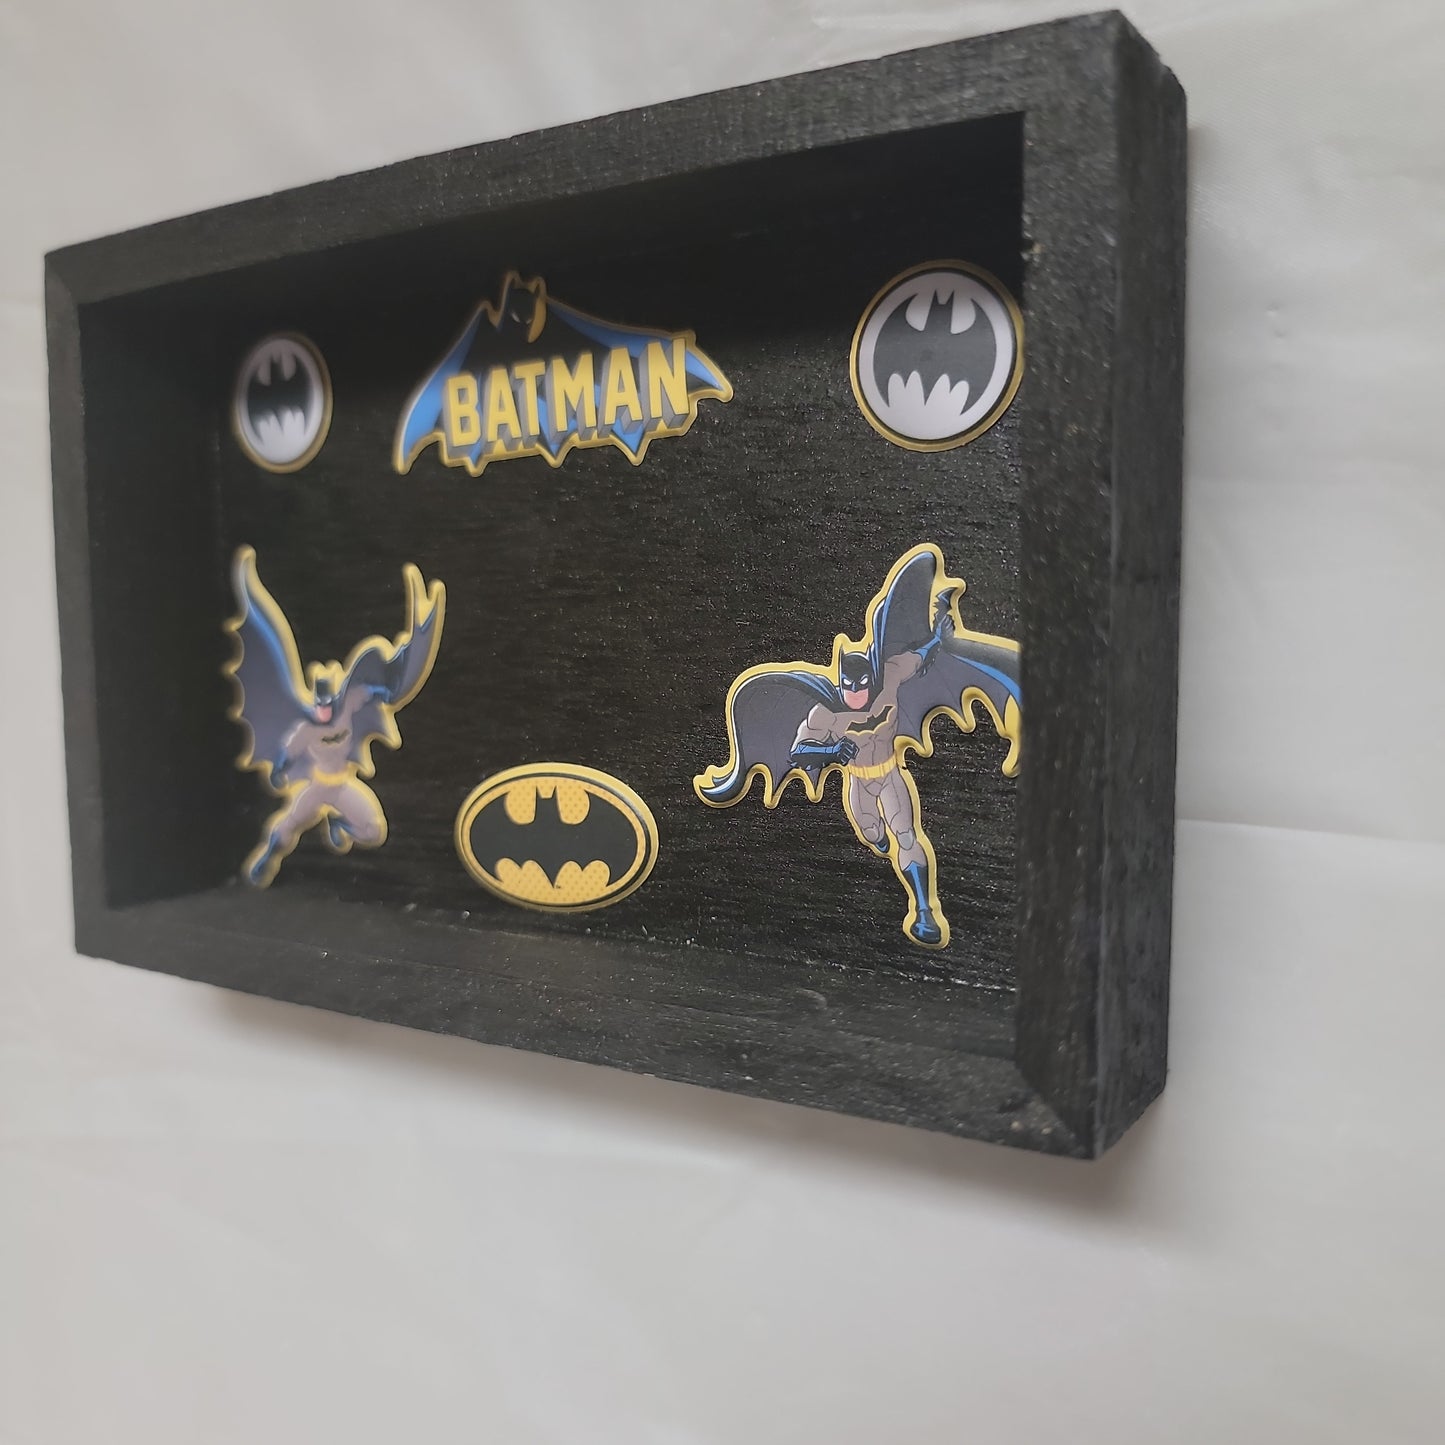 Batman shadow box a